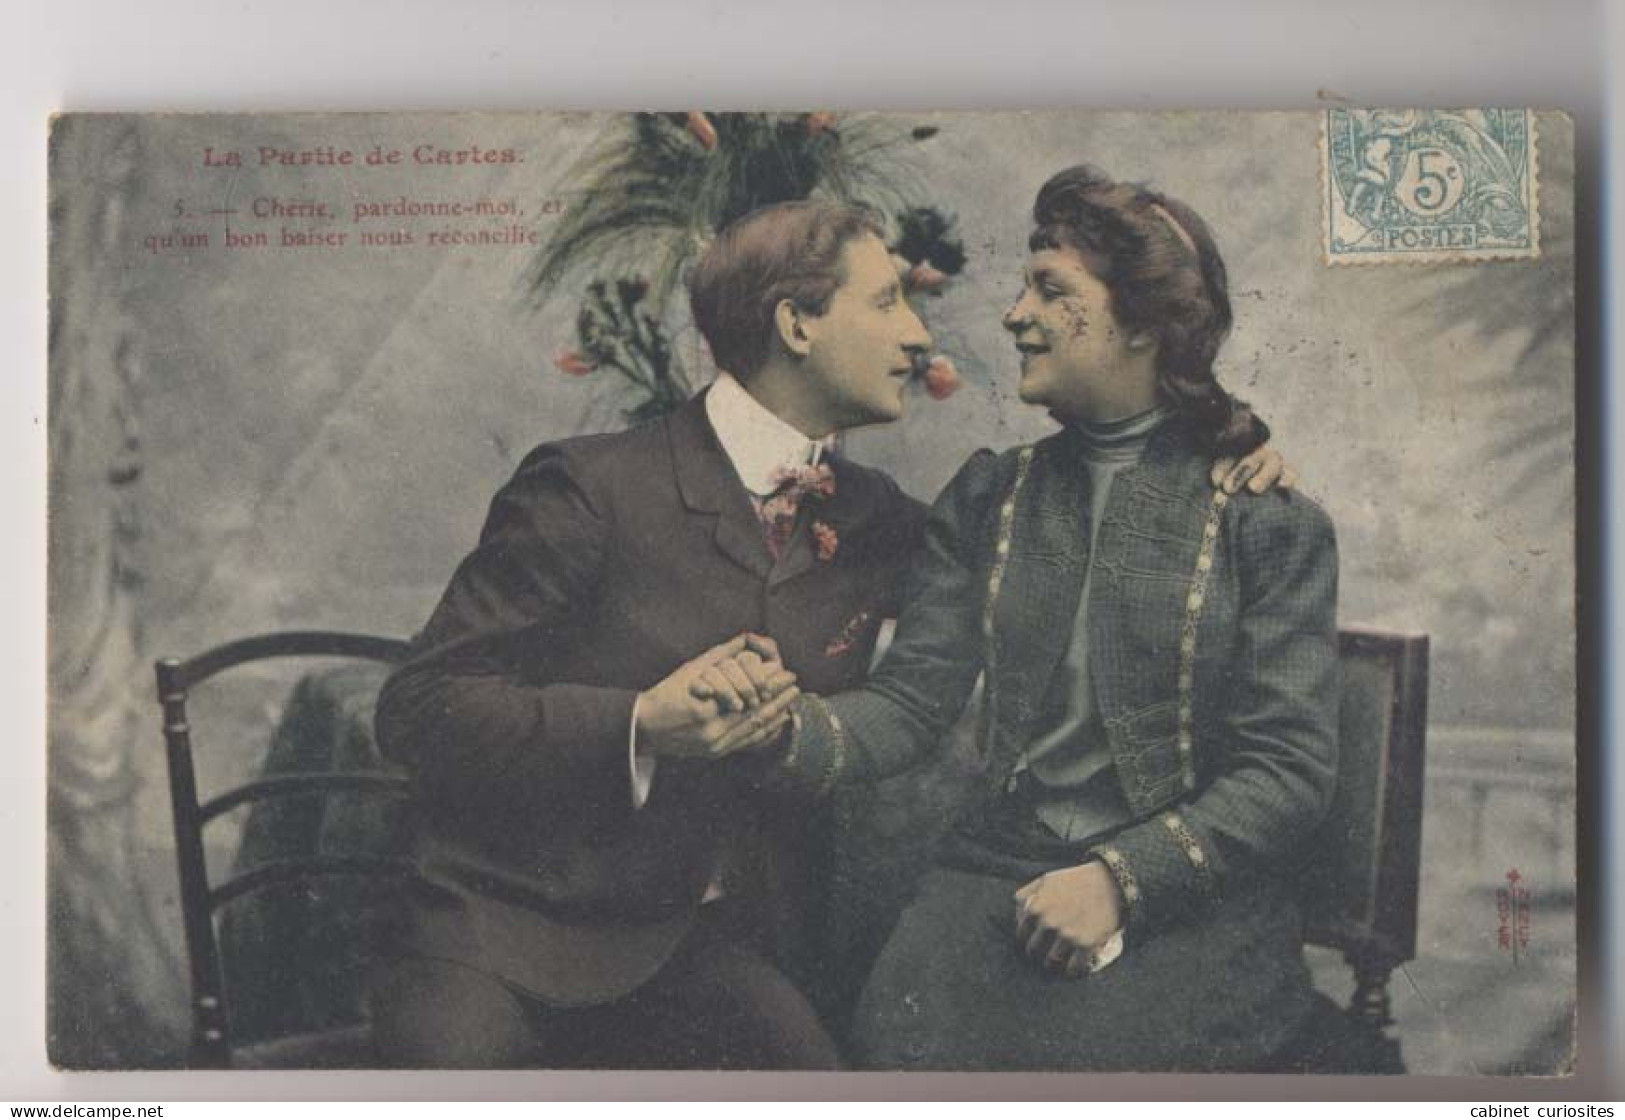 La Partie De Cartes  - 1908 - Chérie Pardonne Moi - Colorisée - Animée - Cartes à Jouer - Cartes à Jouer